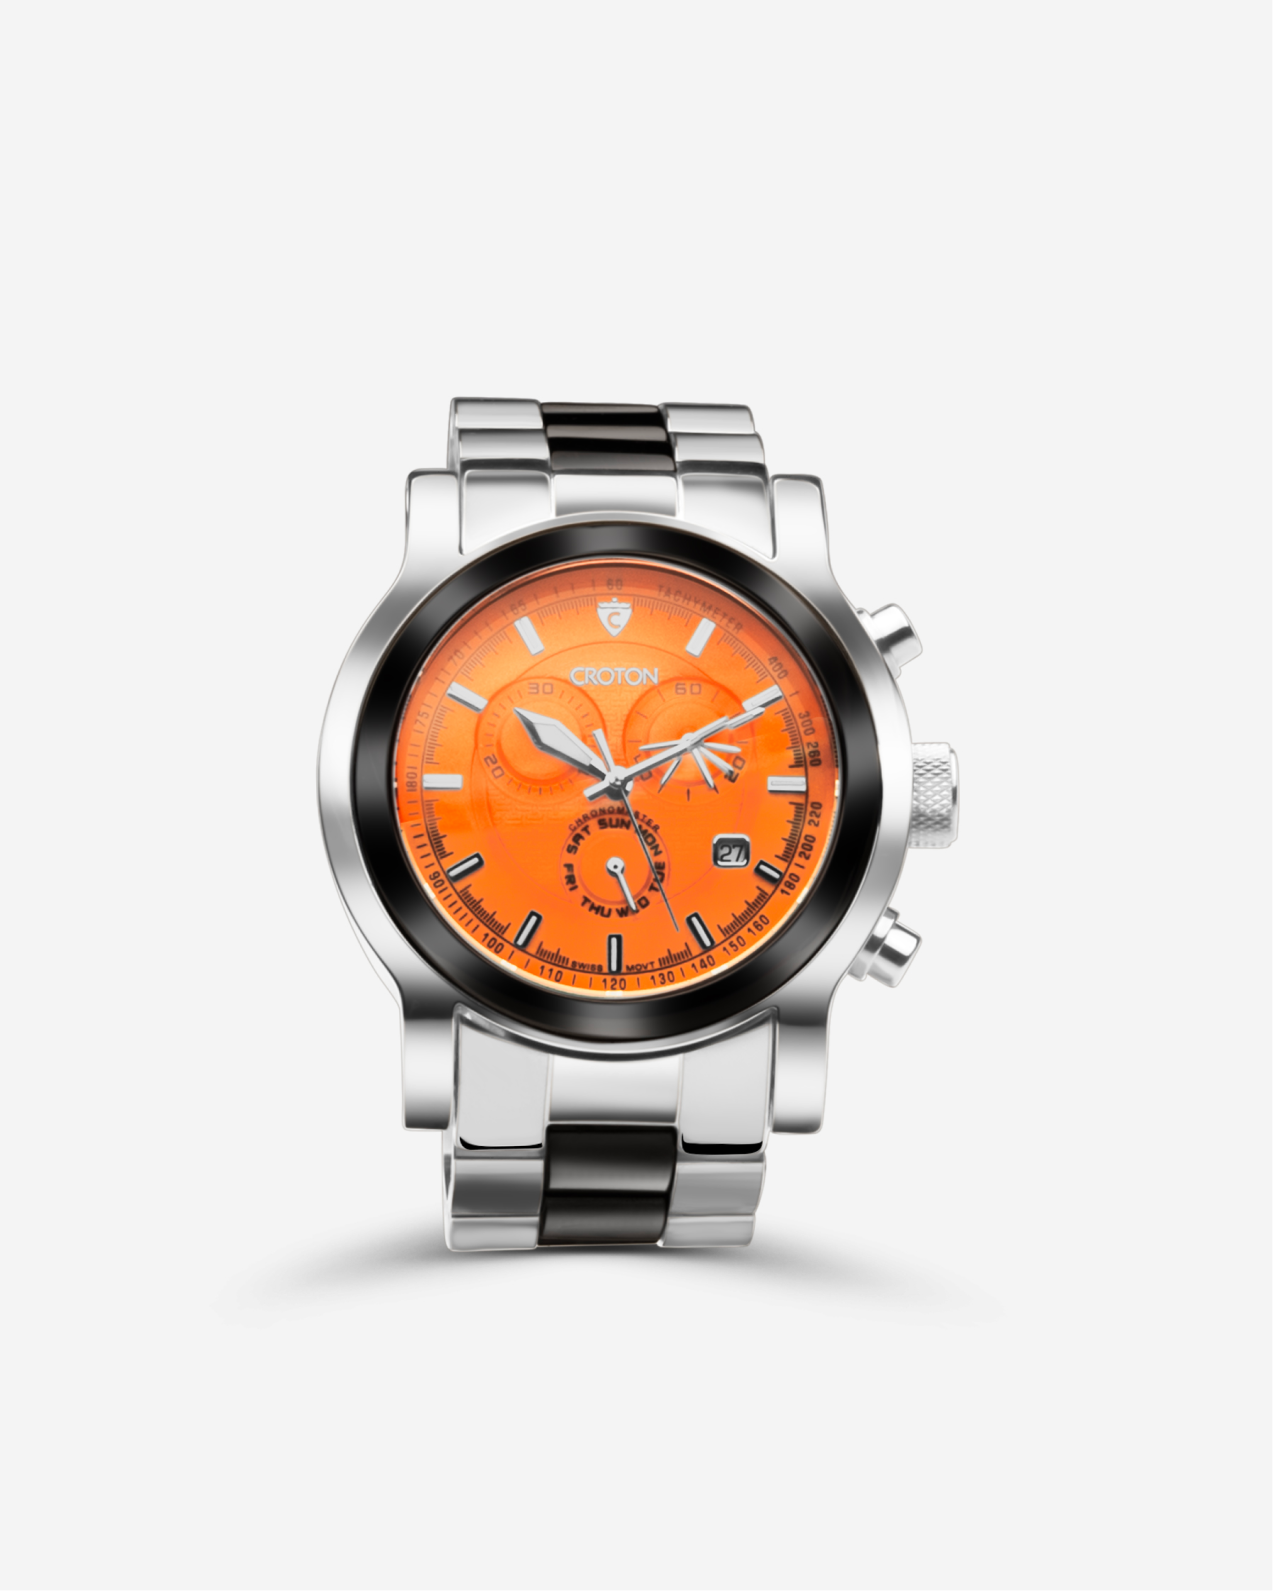 MILLENIUM Croton Men's Swiss Quartz Stainless Steel & Ceramic "Millenium" Chronograph Watch